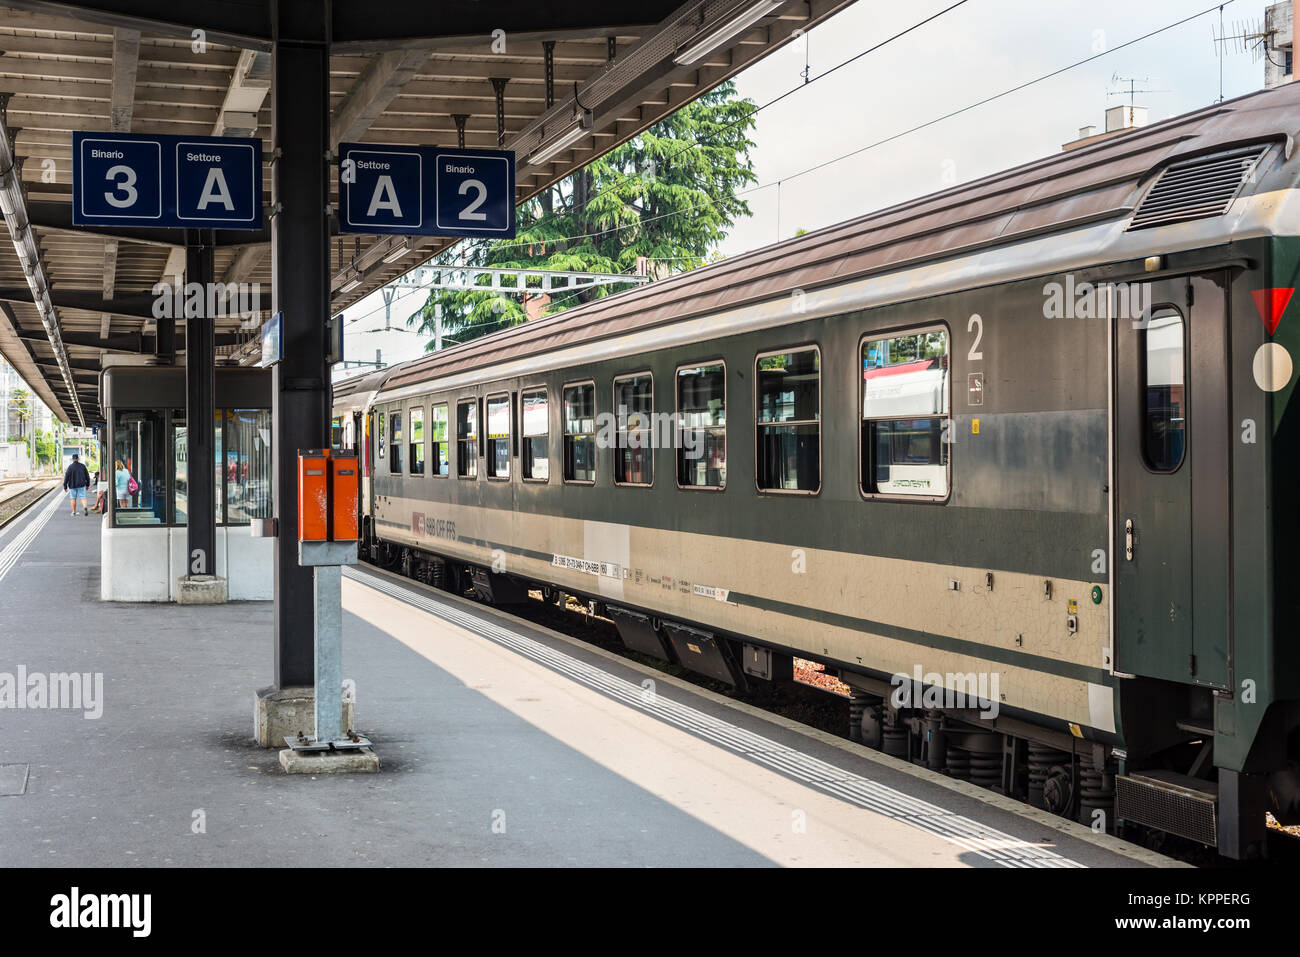 Locarno, Svizzera - 28 Maggio 2016: un treno passeggeri delle Ferrovie Federali Svizzere in una piattaforma di Locarno stazione ferroviaria. Ufficio federale Foto Stock